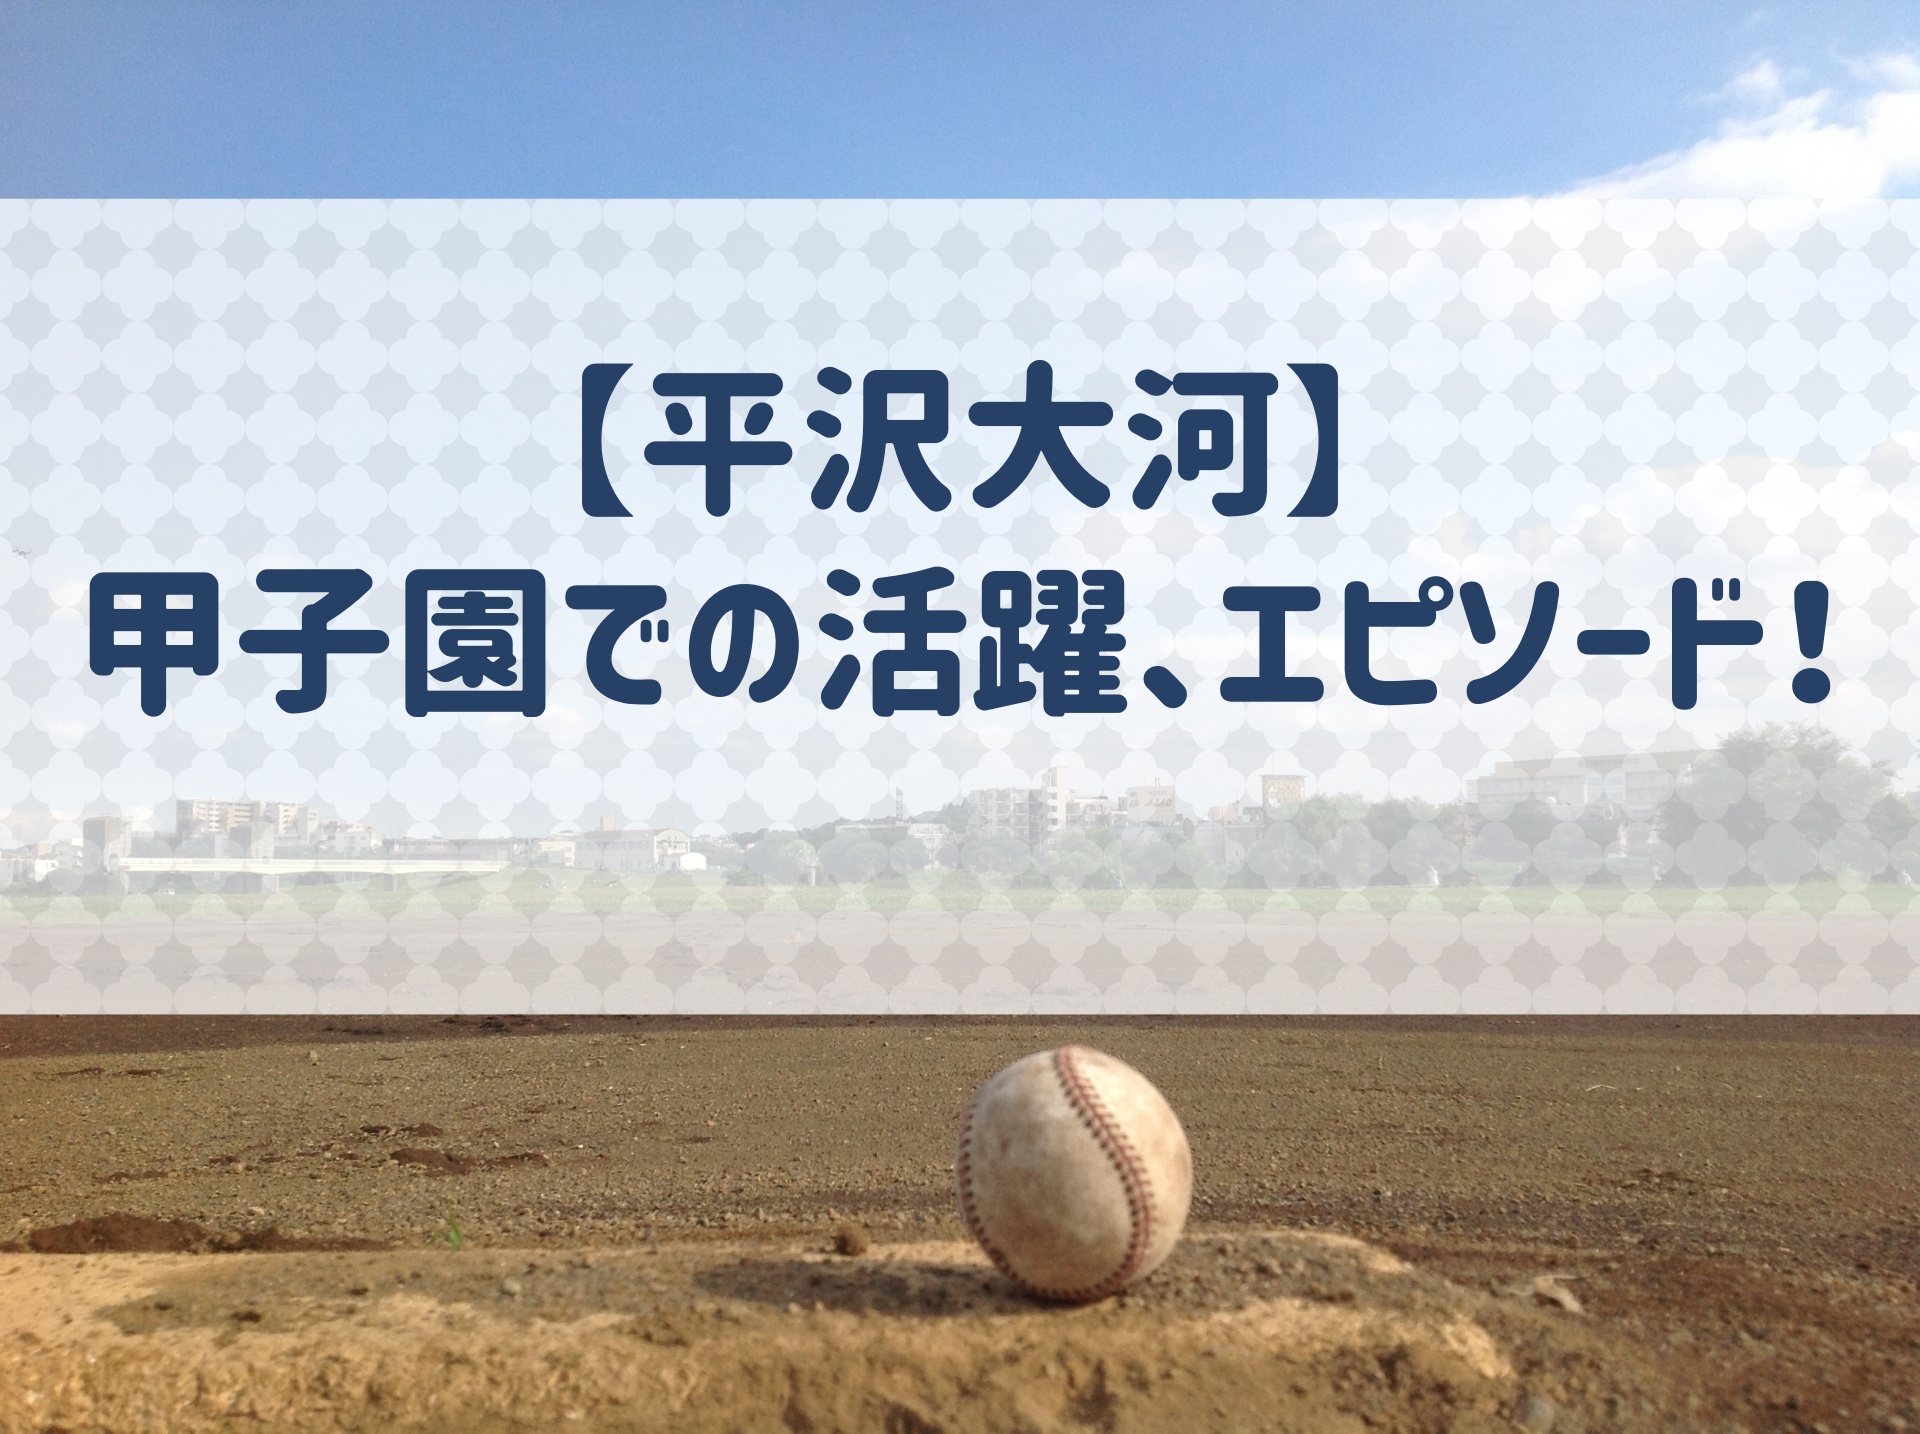 平沢大河 甲子園での成績 エピソードを紹介 俊足巧打のドラフト1位選手 野球用語 Net